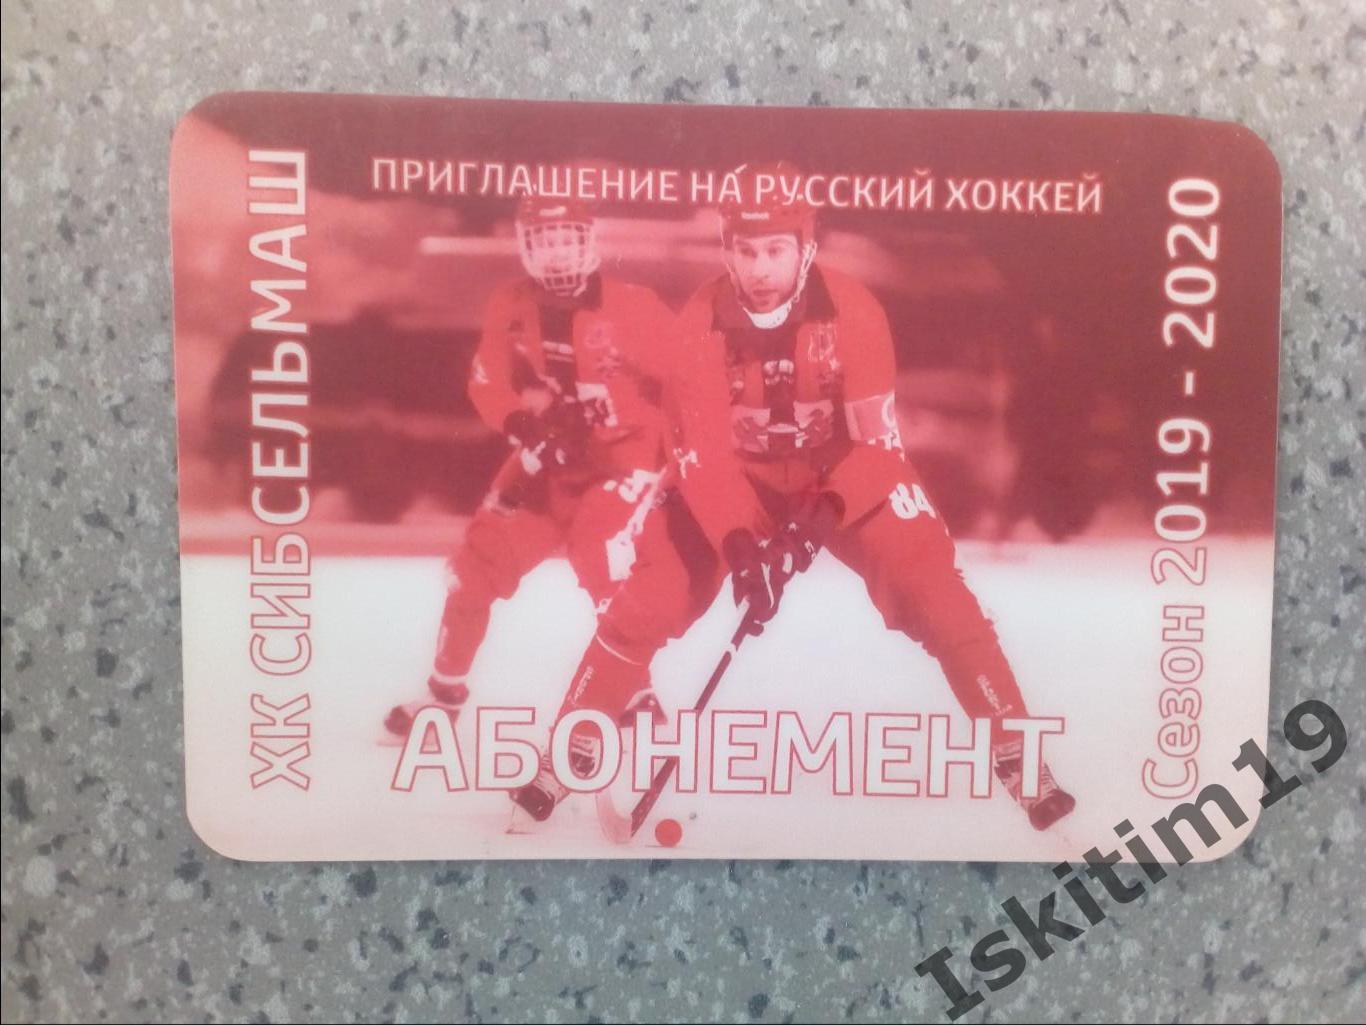 Абонемент хоккей с мячом Сибсельмаш Новосибирск 2019-2020